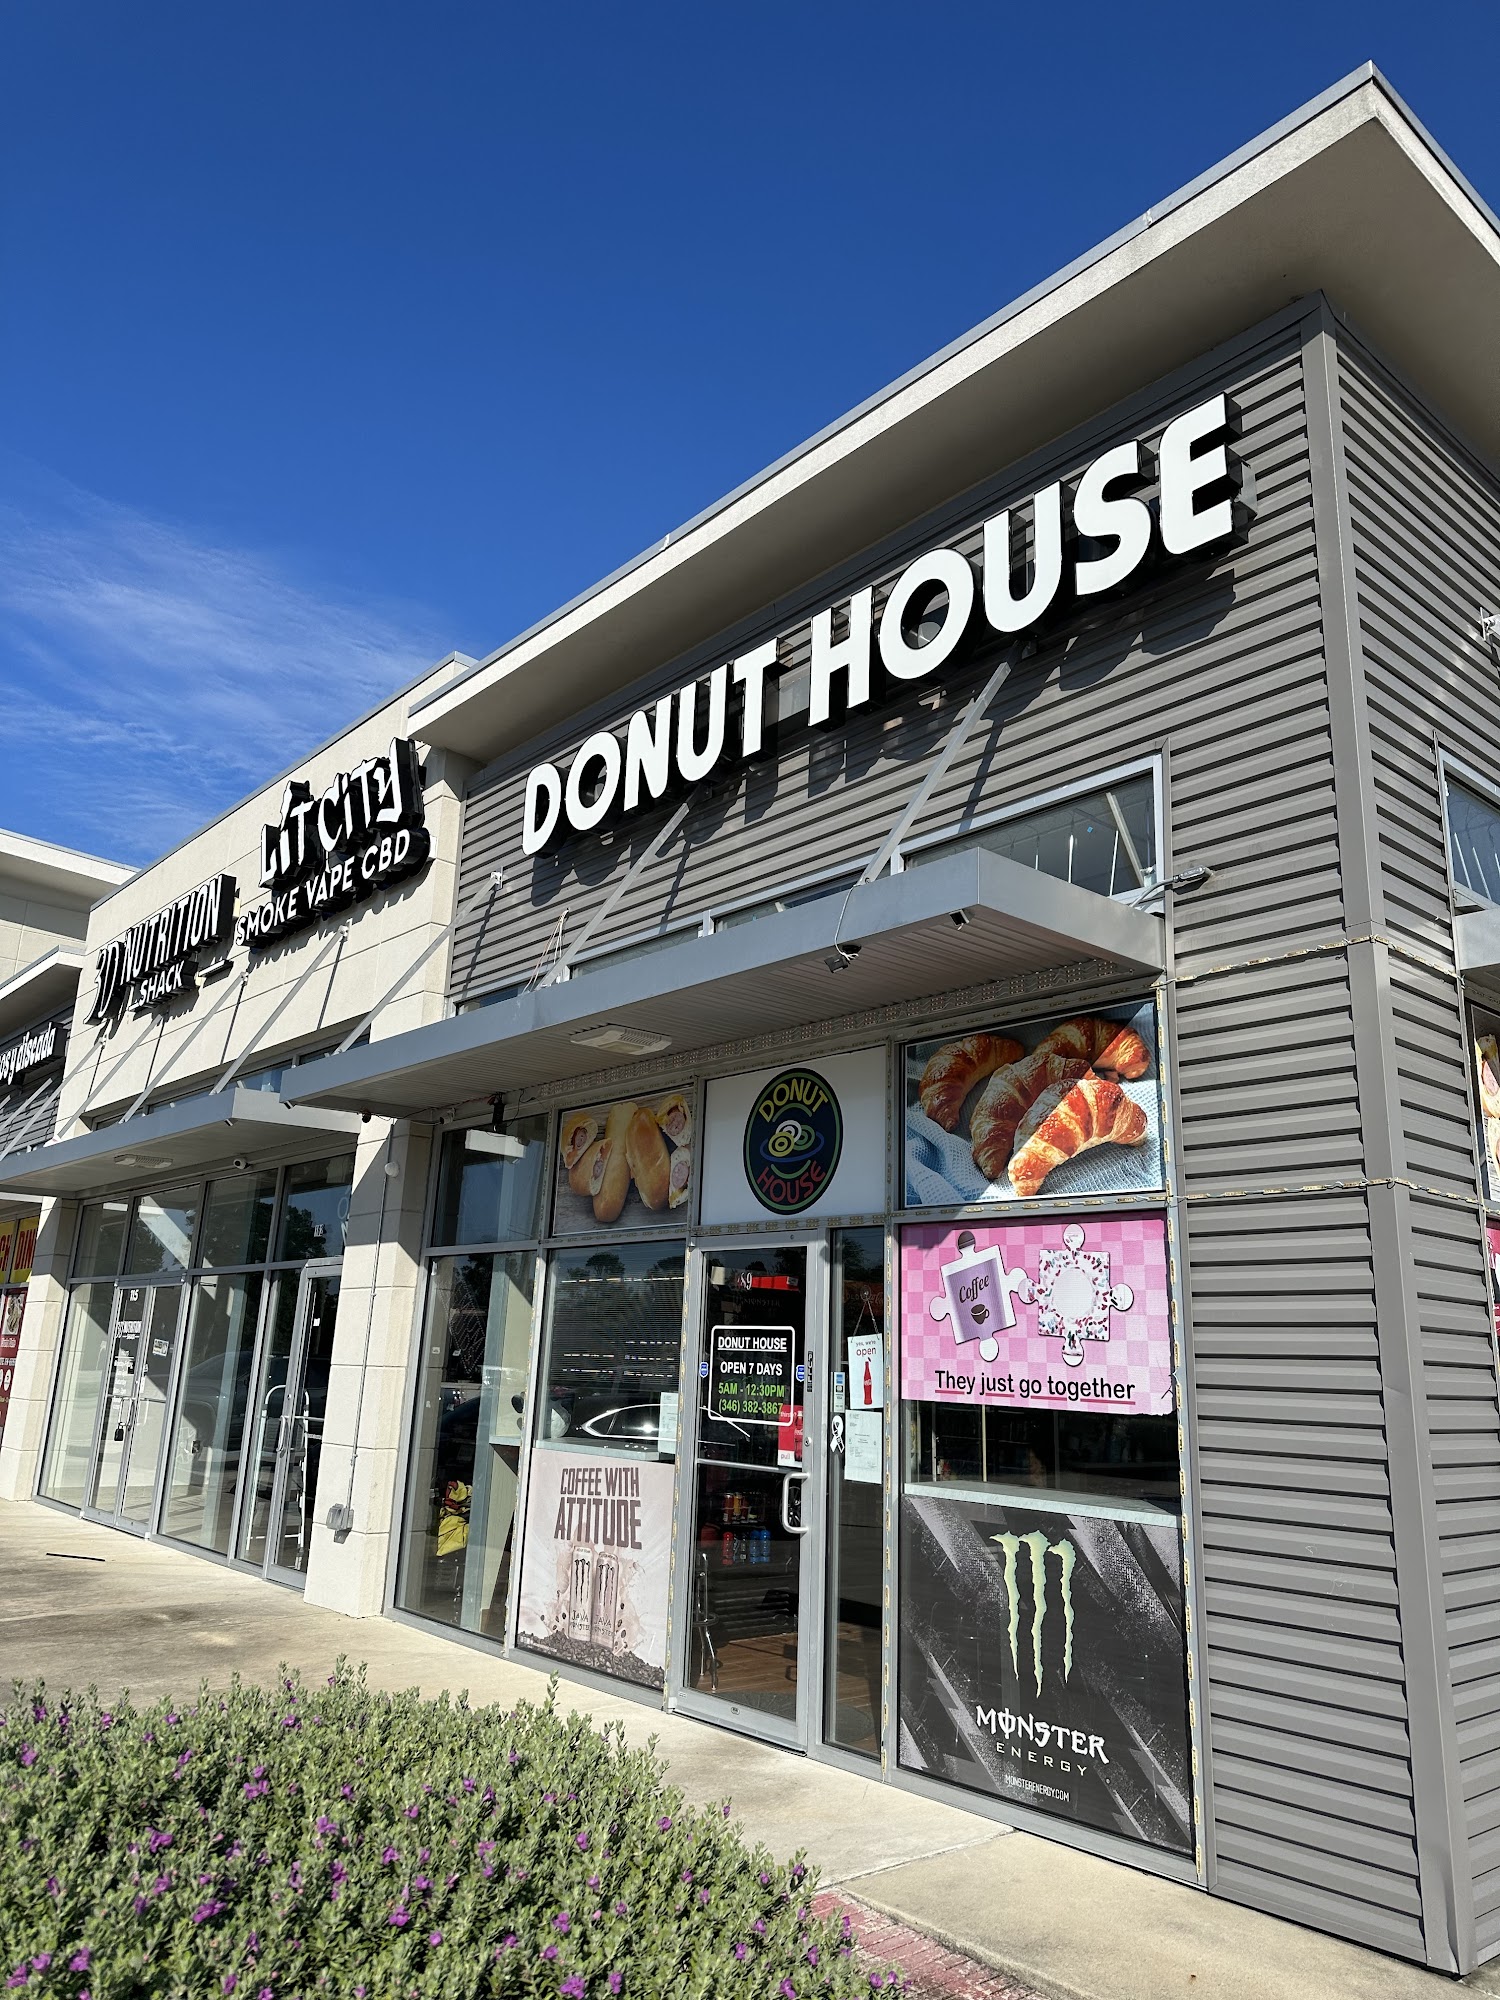 Donut House